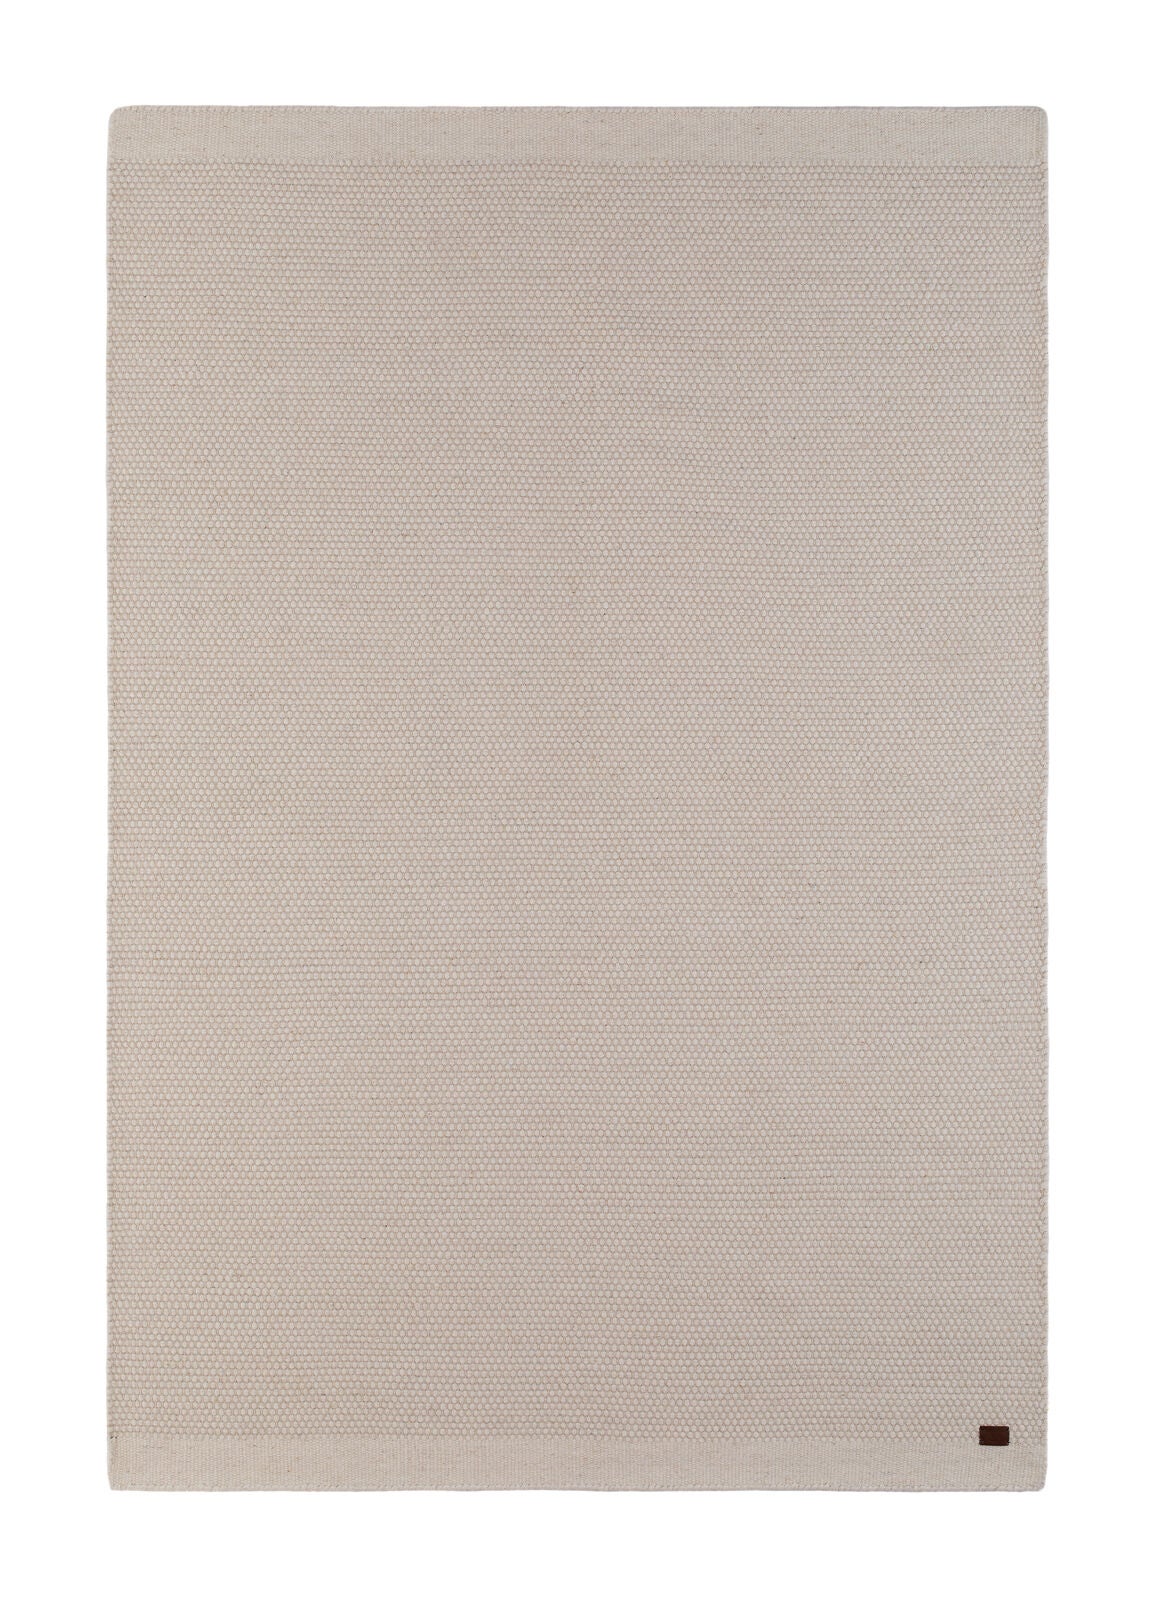 KMCarpets Tofta Teppich 160x230 cm, Weiß von KMCarpets